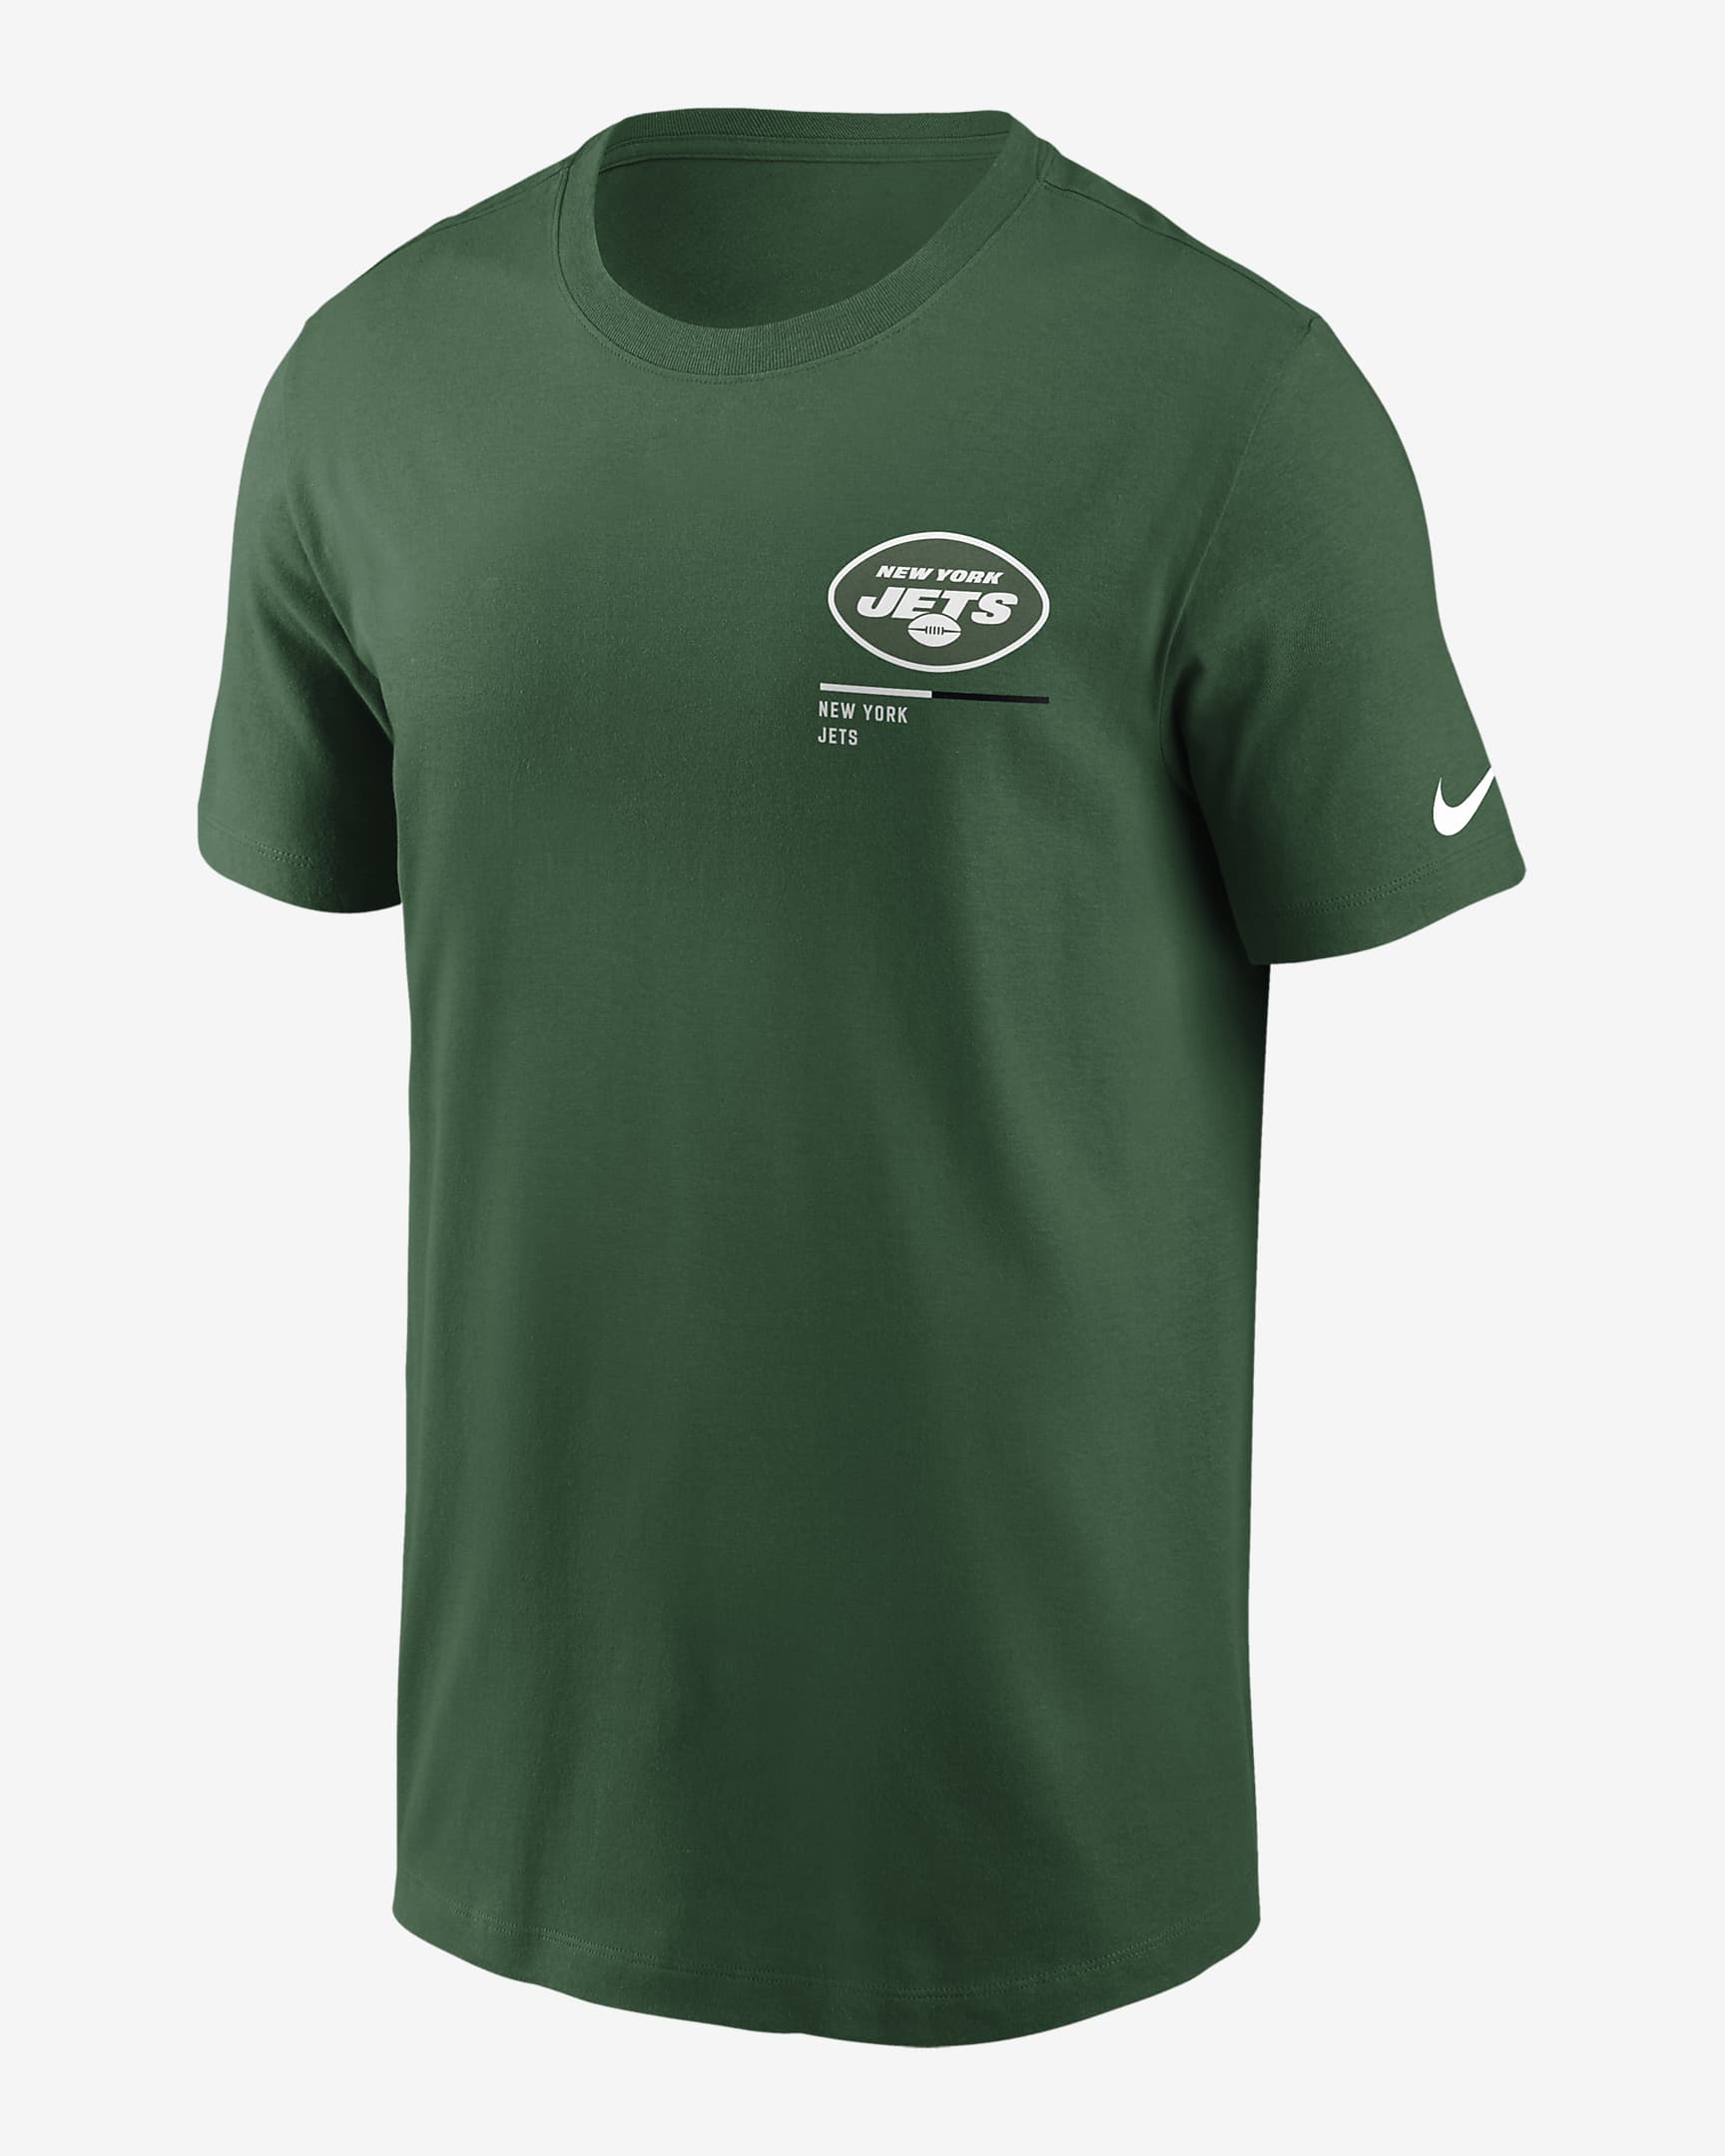 Playera para hombre Nike Team Incline (NFL New York Jets). Nike.com